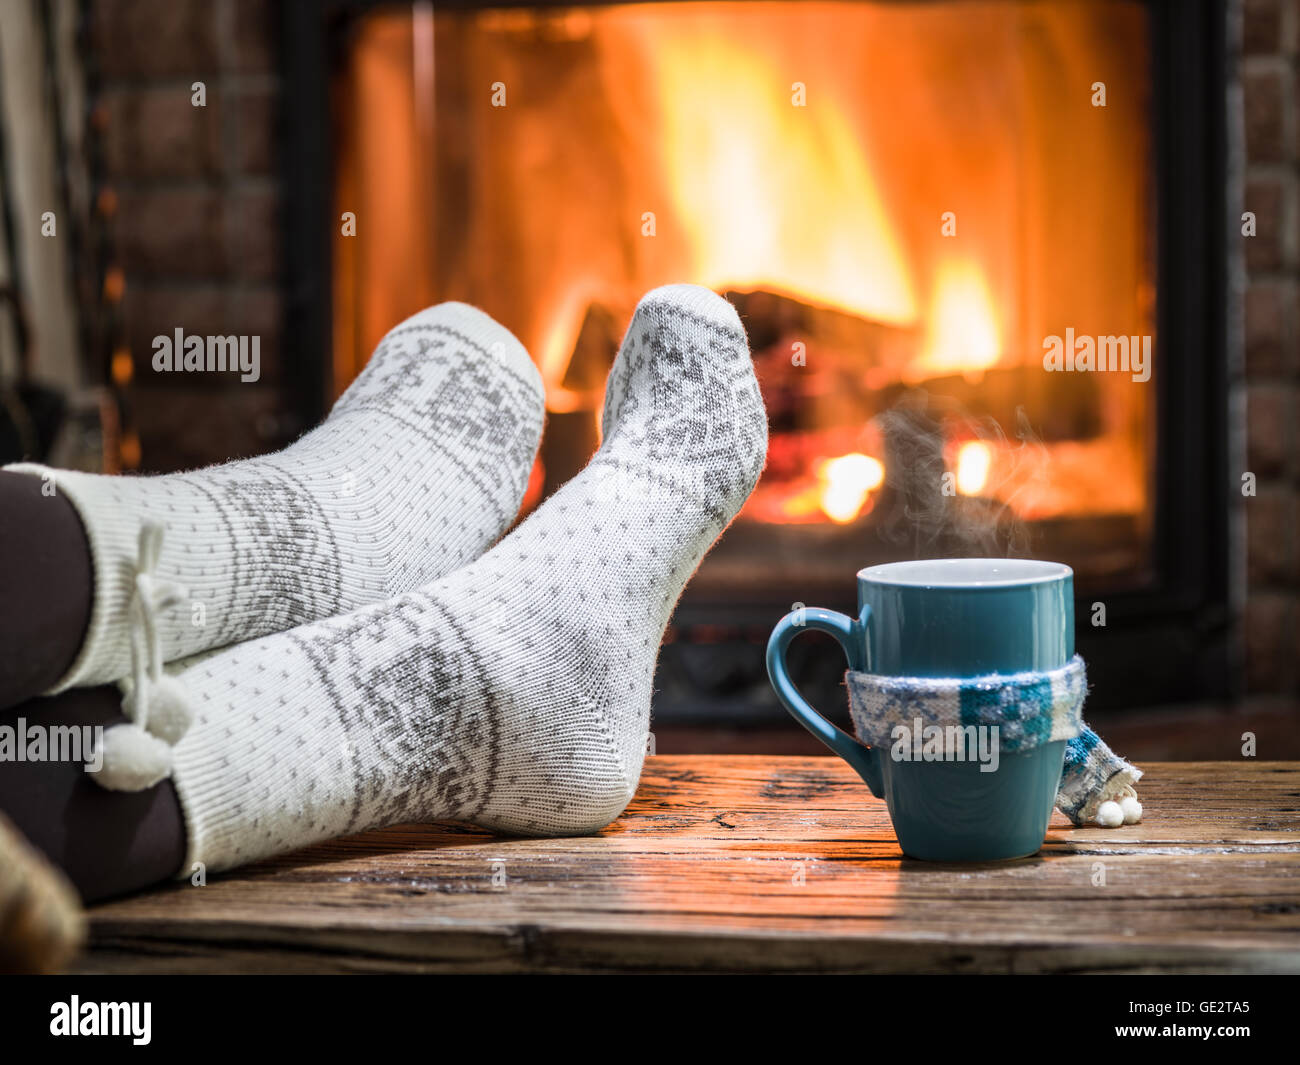 Wärmend und entspannend in der Nähe von Kamin. Frau Füße in der Nähe von der Tasse heißes Getränk am Kamin. Stockfoto